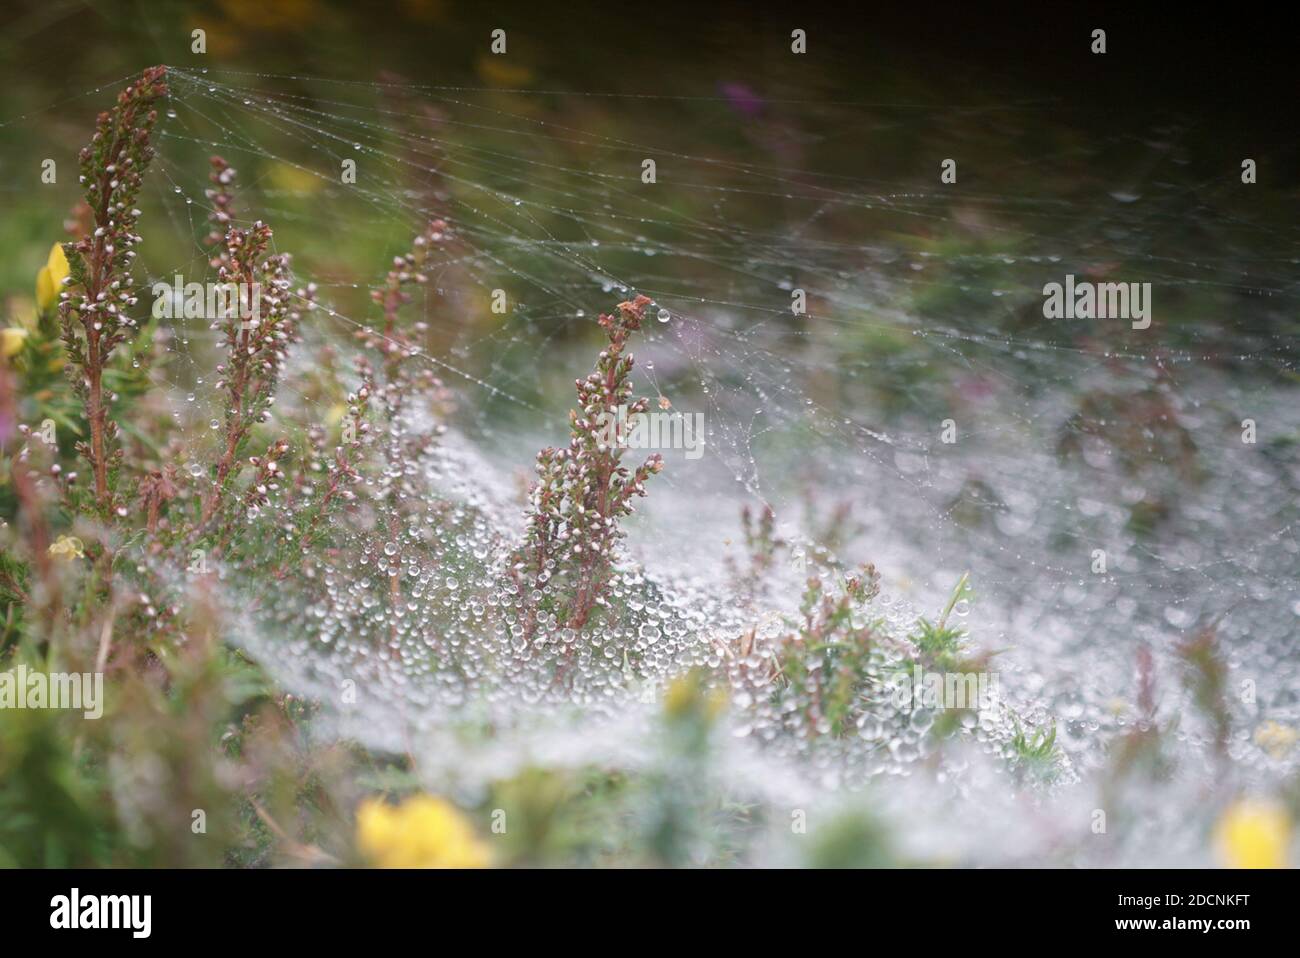 Trichterförmiges Spinnennetz der Agelena labyrinthica, das mit Wassertröpfchen bedeckt ist Niedrig liegendes Gras und Vegetation im Morgengrauen in Pembrokeshire UK Stockfoto